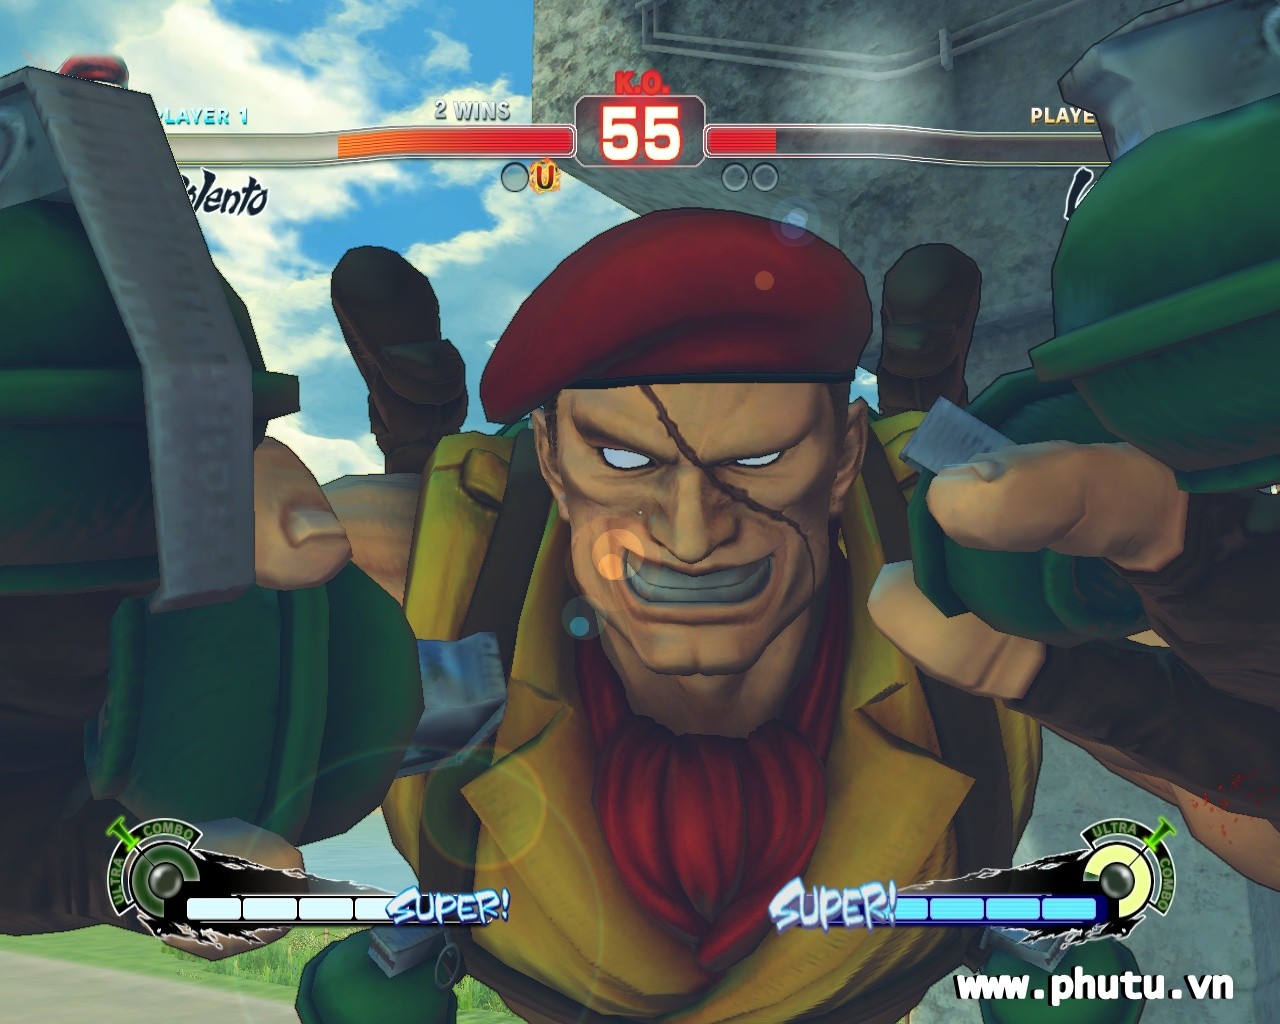 Ultra Street Fighter IV - Game đề kháng hay 2014 4_bmp10